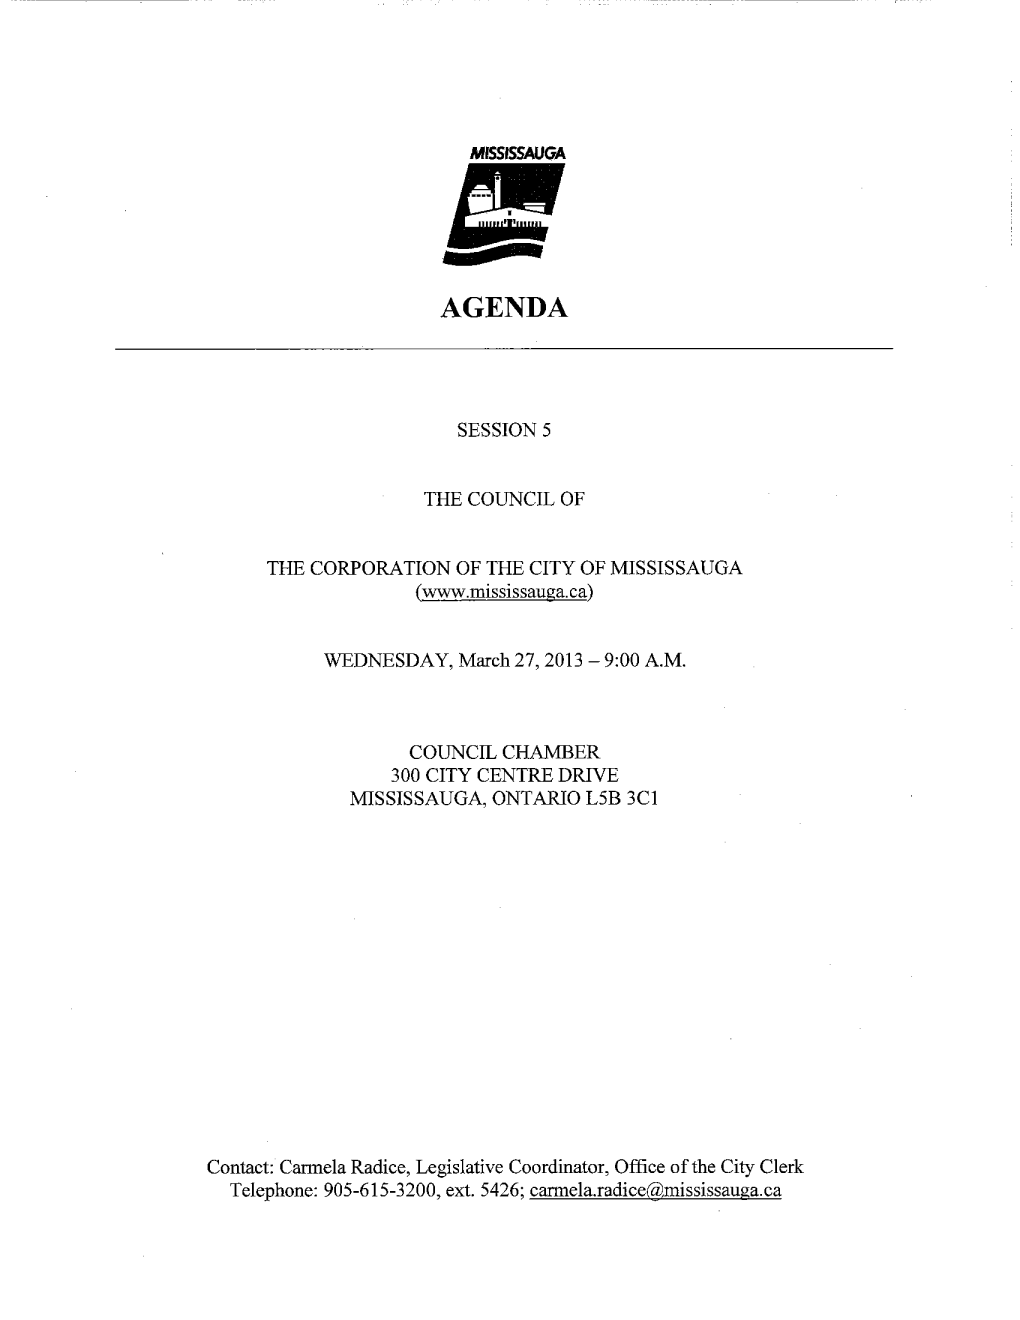 Council Agenda – March 27, 2013